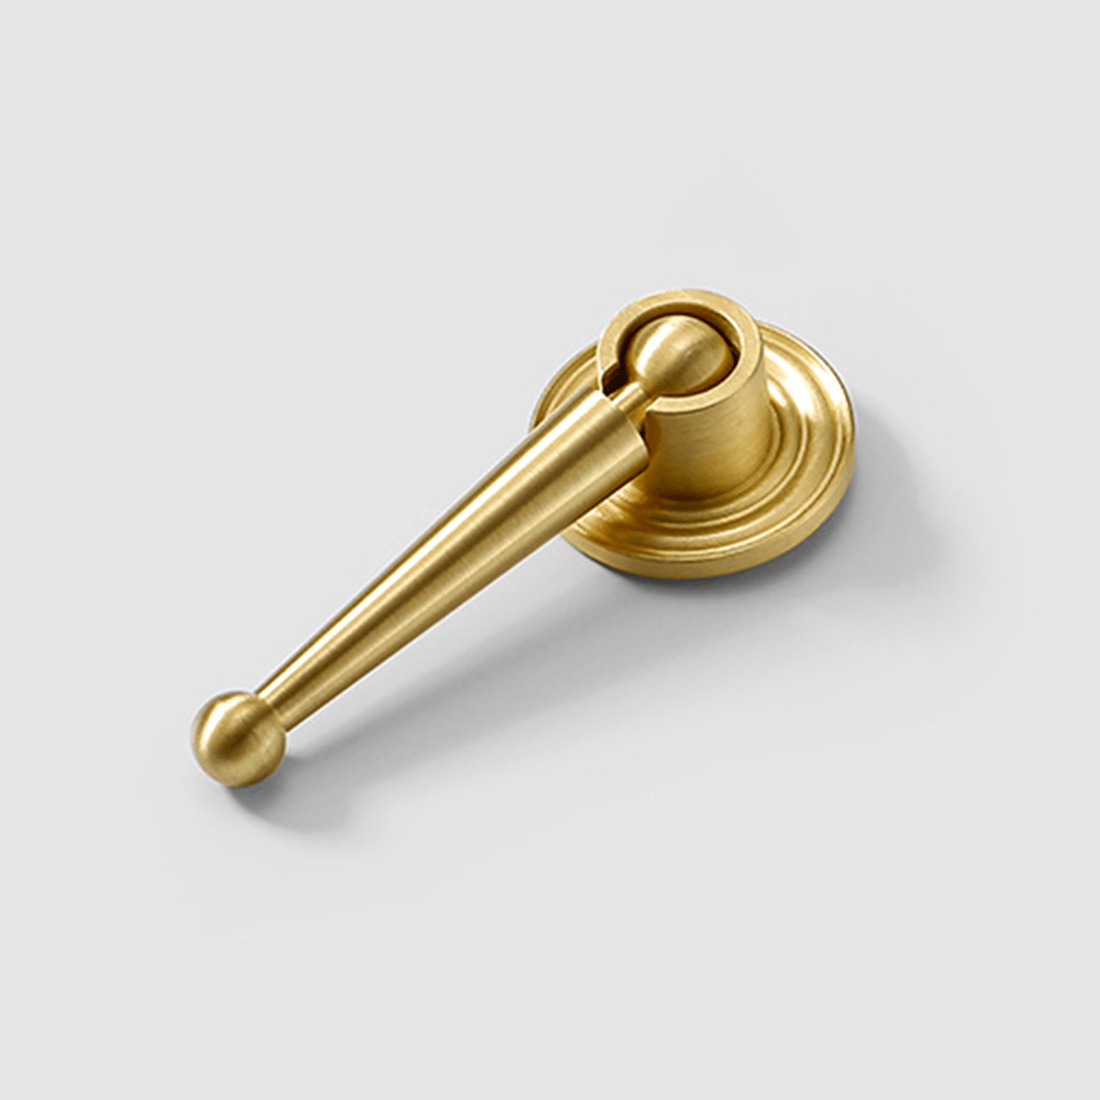 Oscar Drop Knob Knob 76mm / Gold / Brass - M A N T A R A